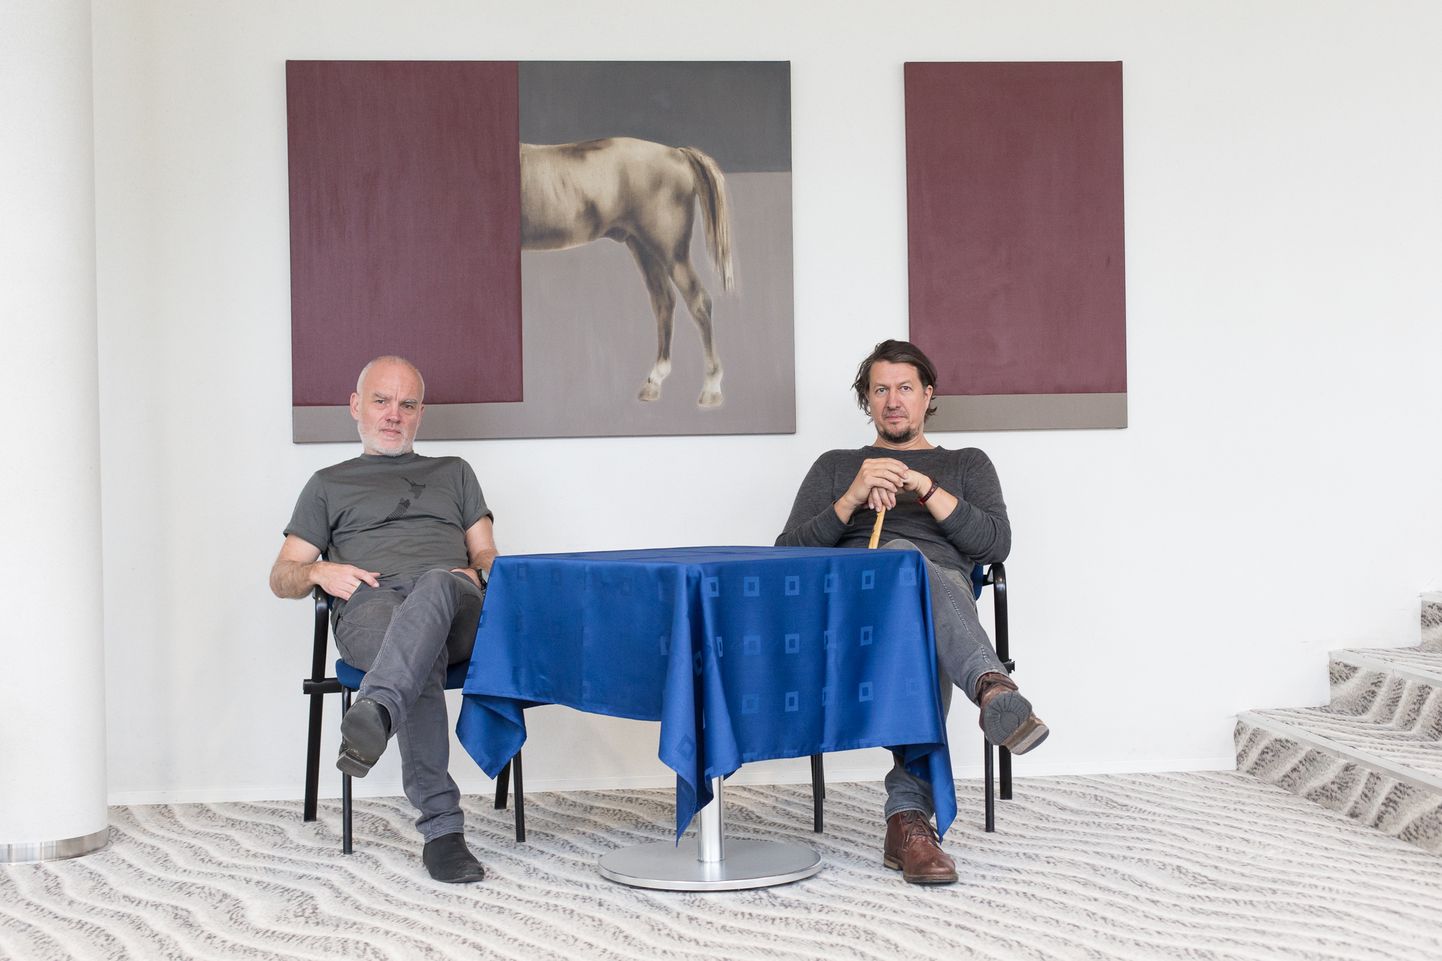 Näituse "5+" kuraatorid Lauri Sillak aka Laurentsius ning Mauri Gross viimase enigmaatiliste tööde "Absoluutne kuulmine" ja "Absoluutne vaikus" taustal.